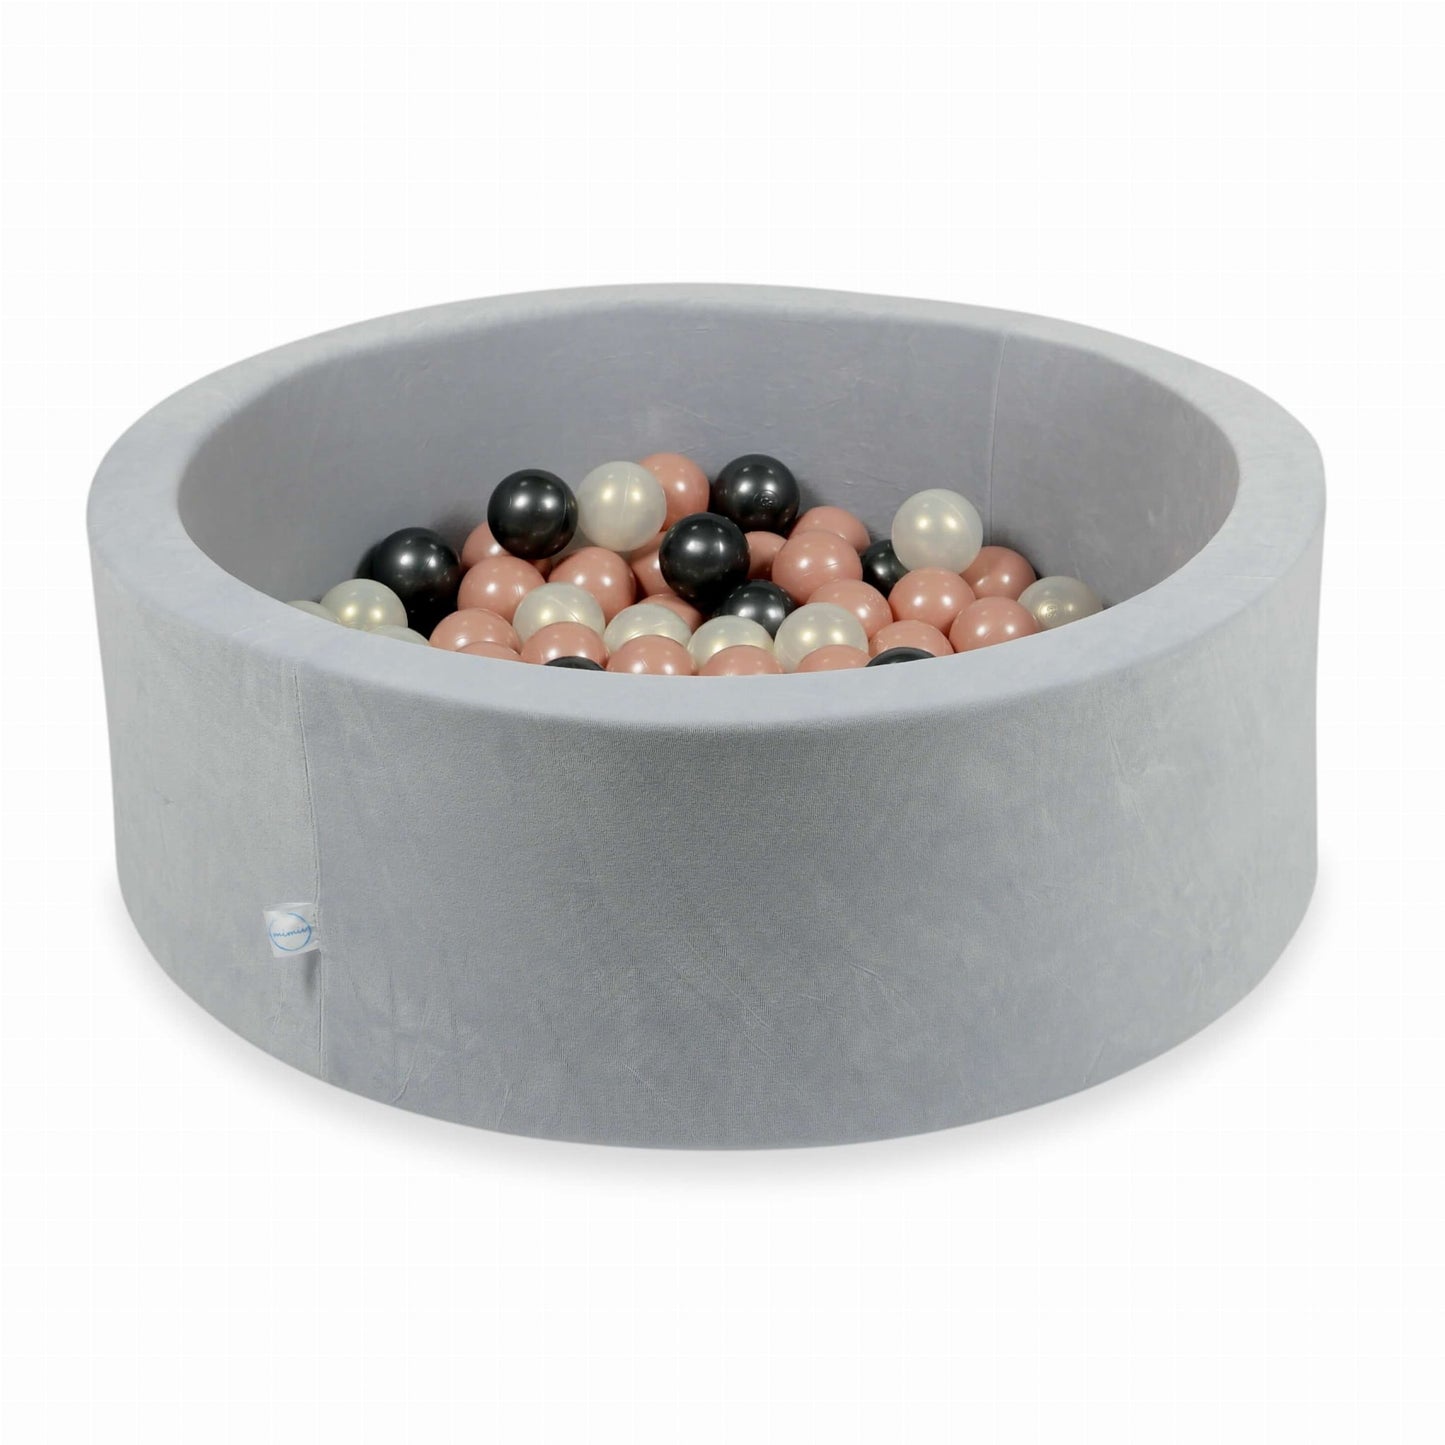 Piscine à Balles 90x30 Velvet Soft gris clair avec balles 200 pcs (or rose, iridescent, graphite métallique)